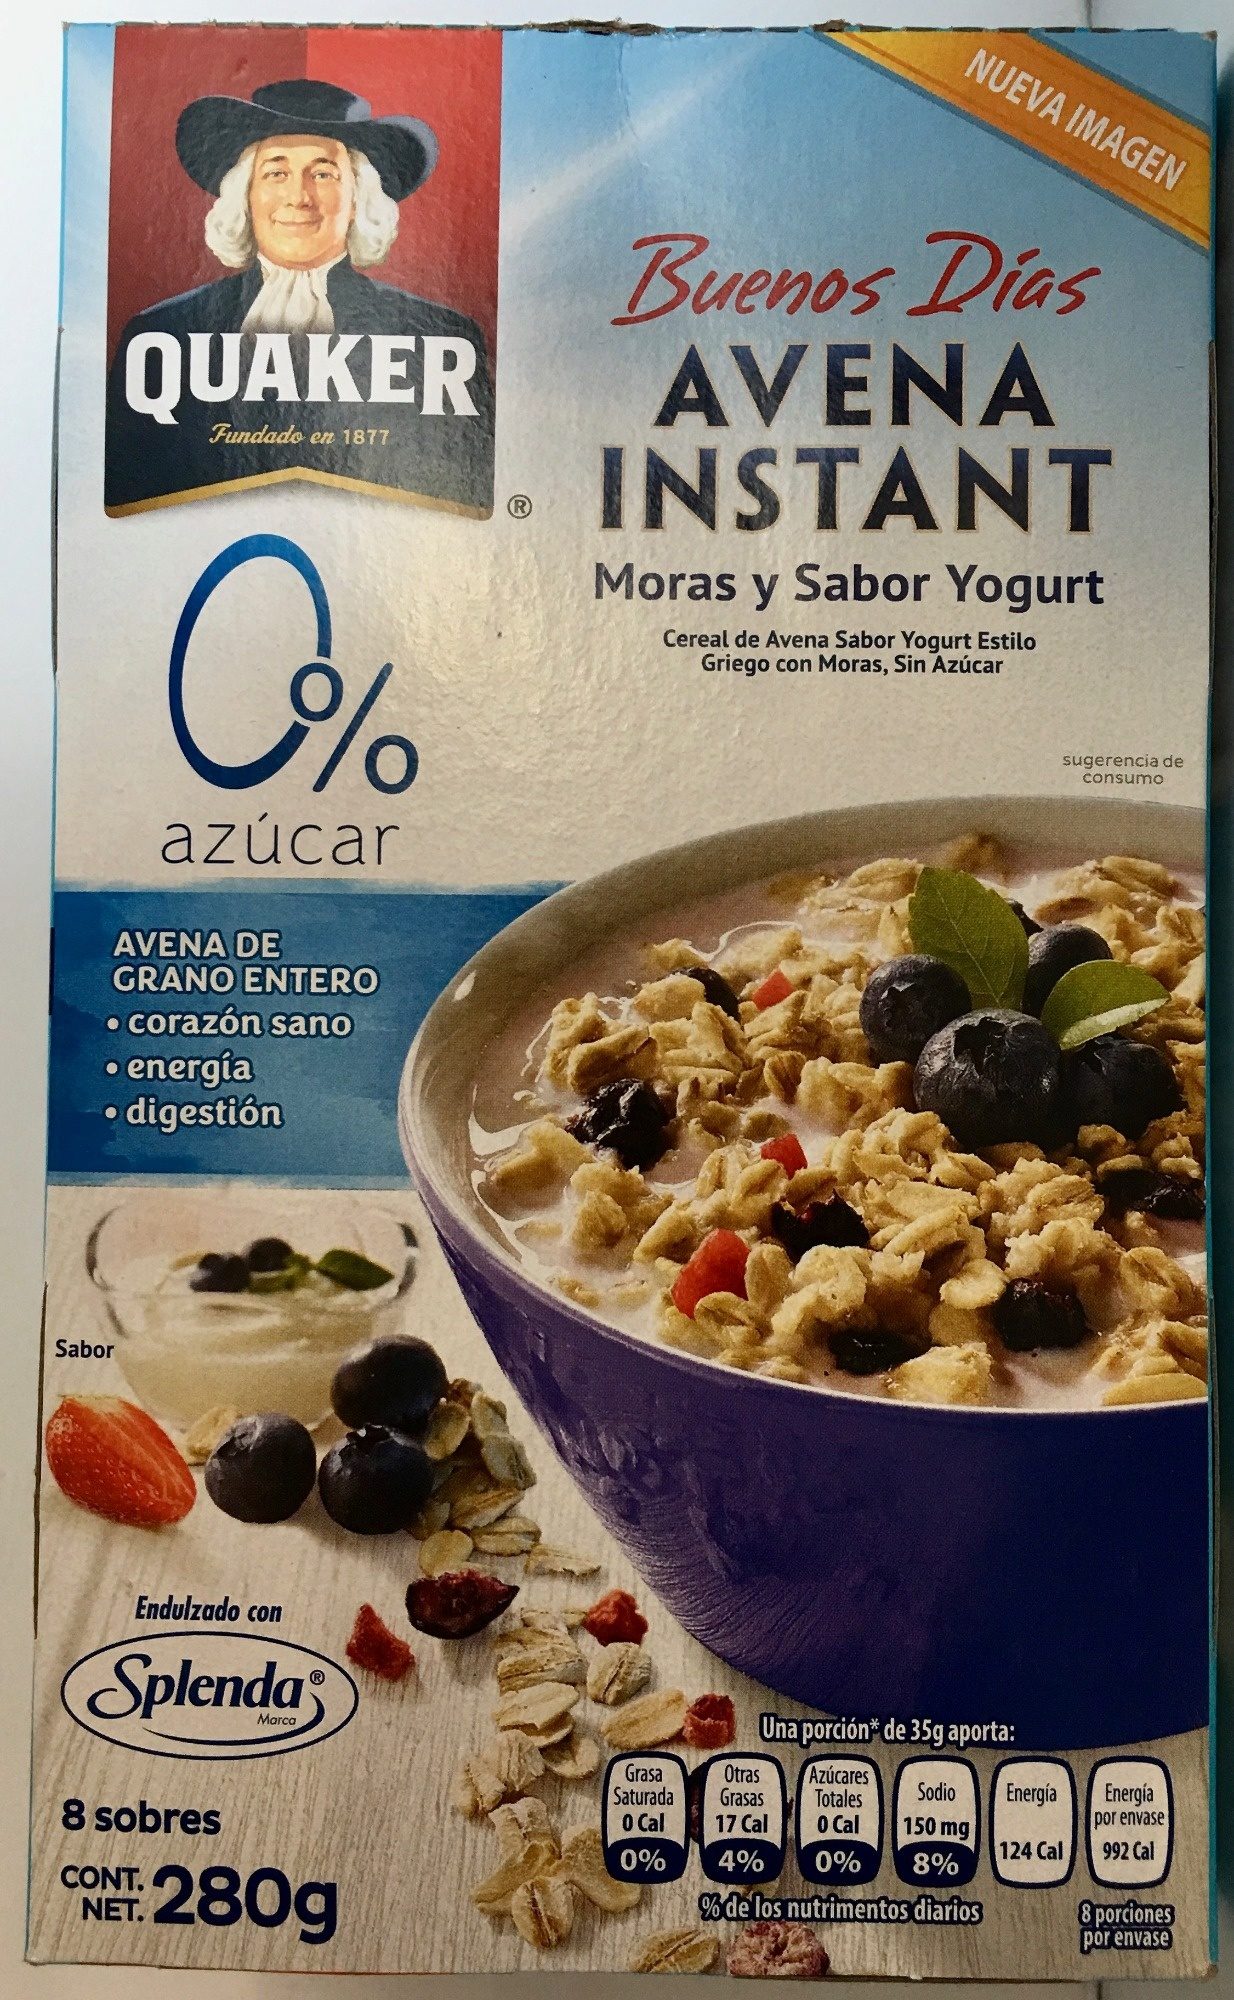 Buenos Días Avena Instant Moras y Sabor Yogurt - Producto